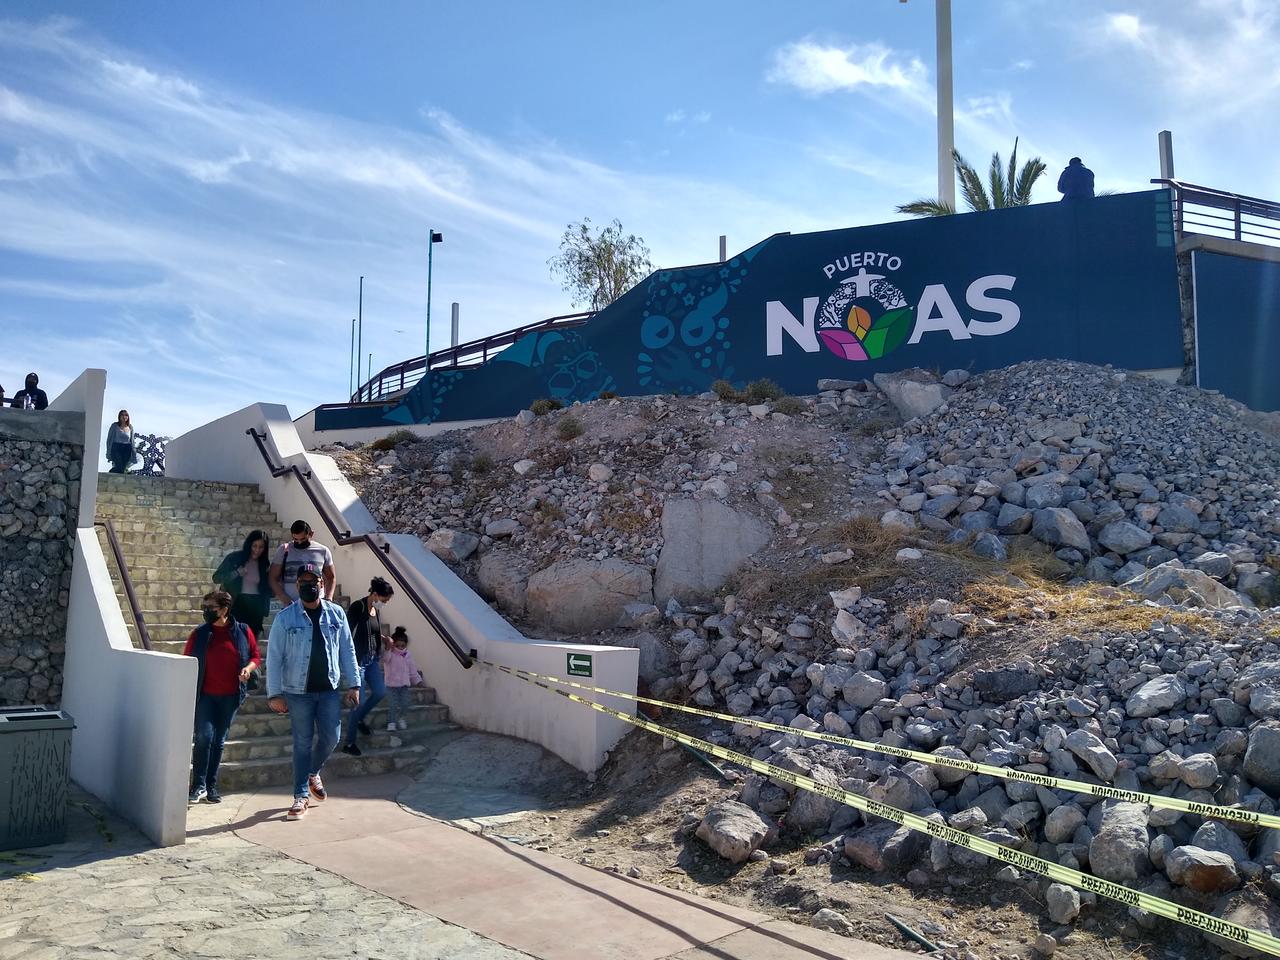 Instalación de restaurantes en Puerto Noas continúa pendiente